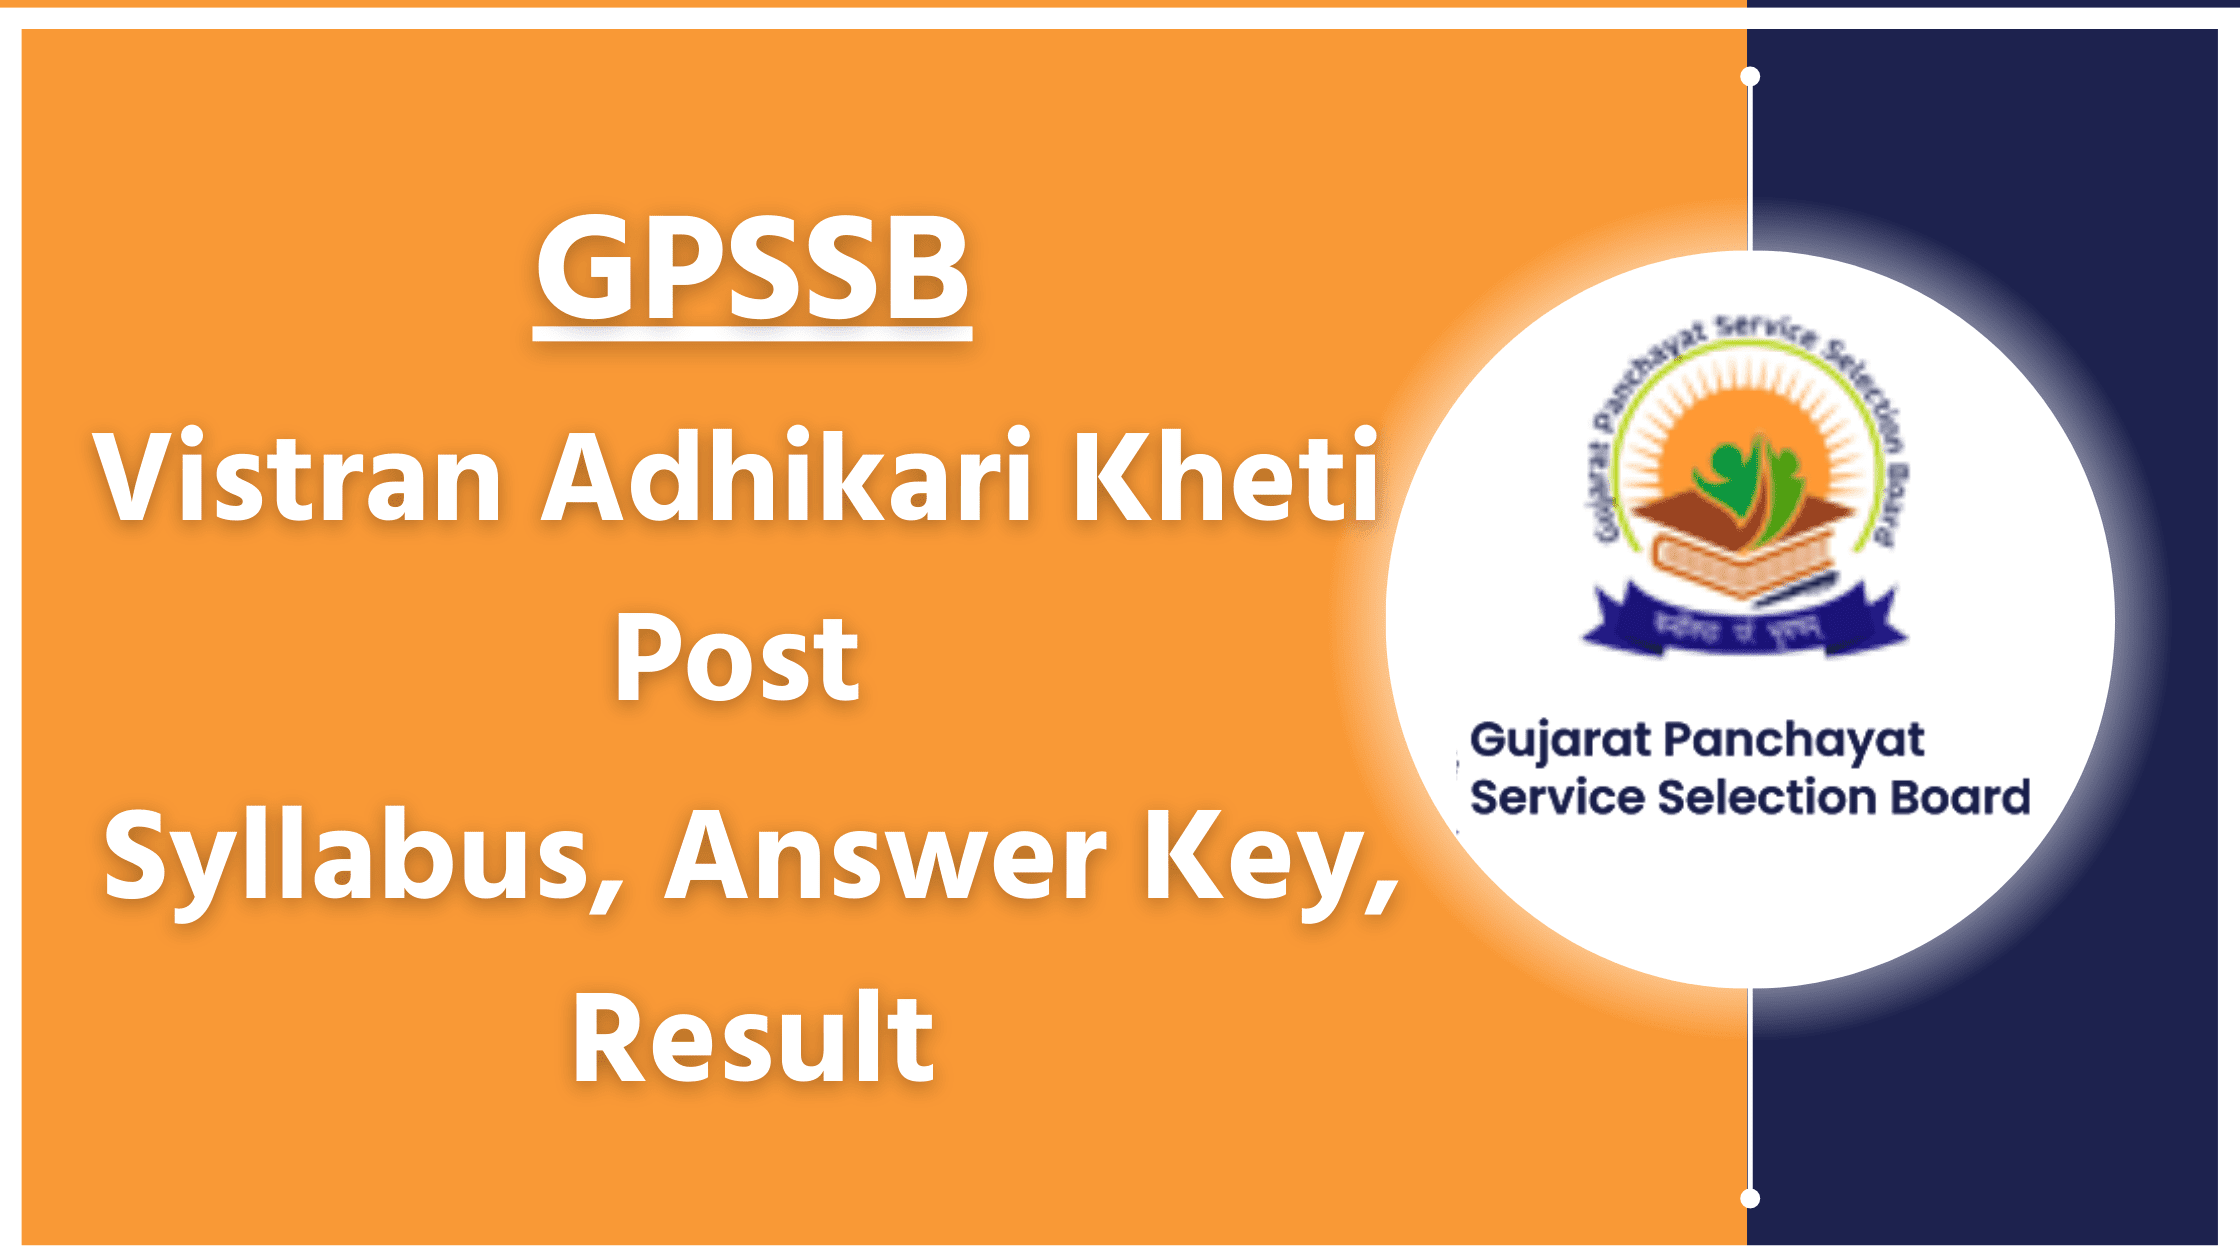 GPSSB Vistran Adhikari Kheti Syllabus